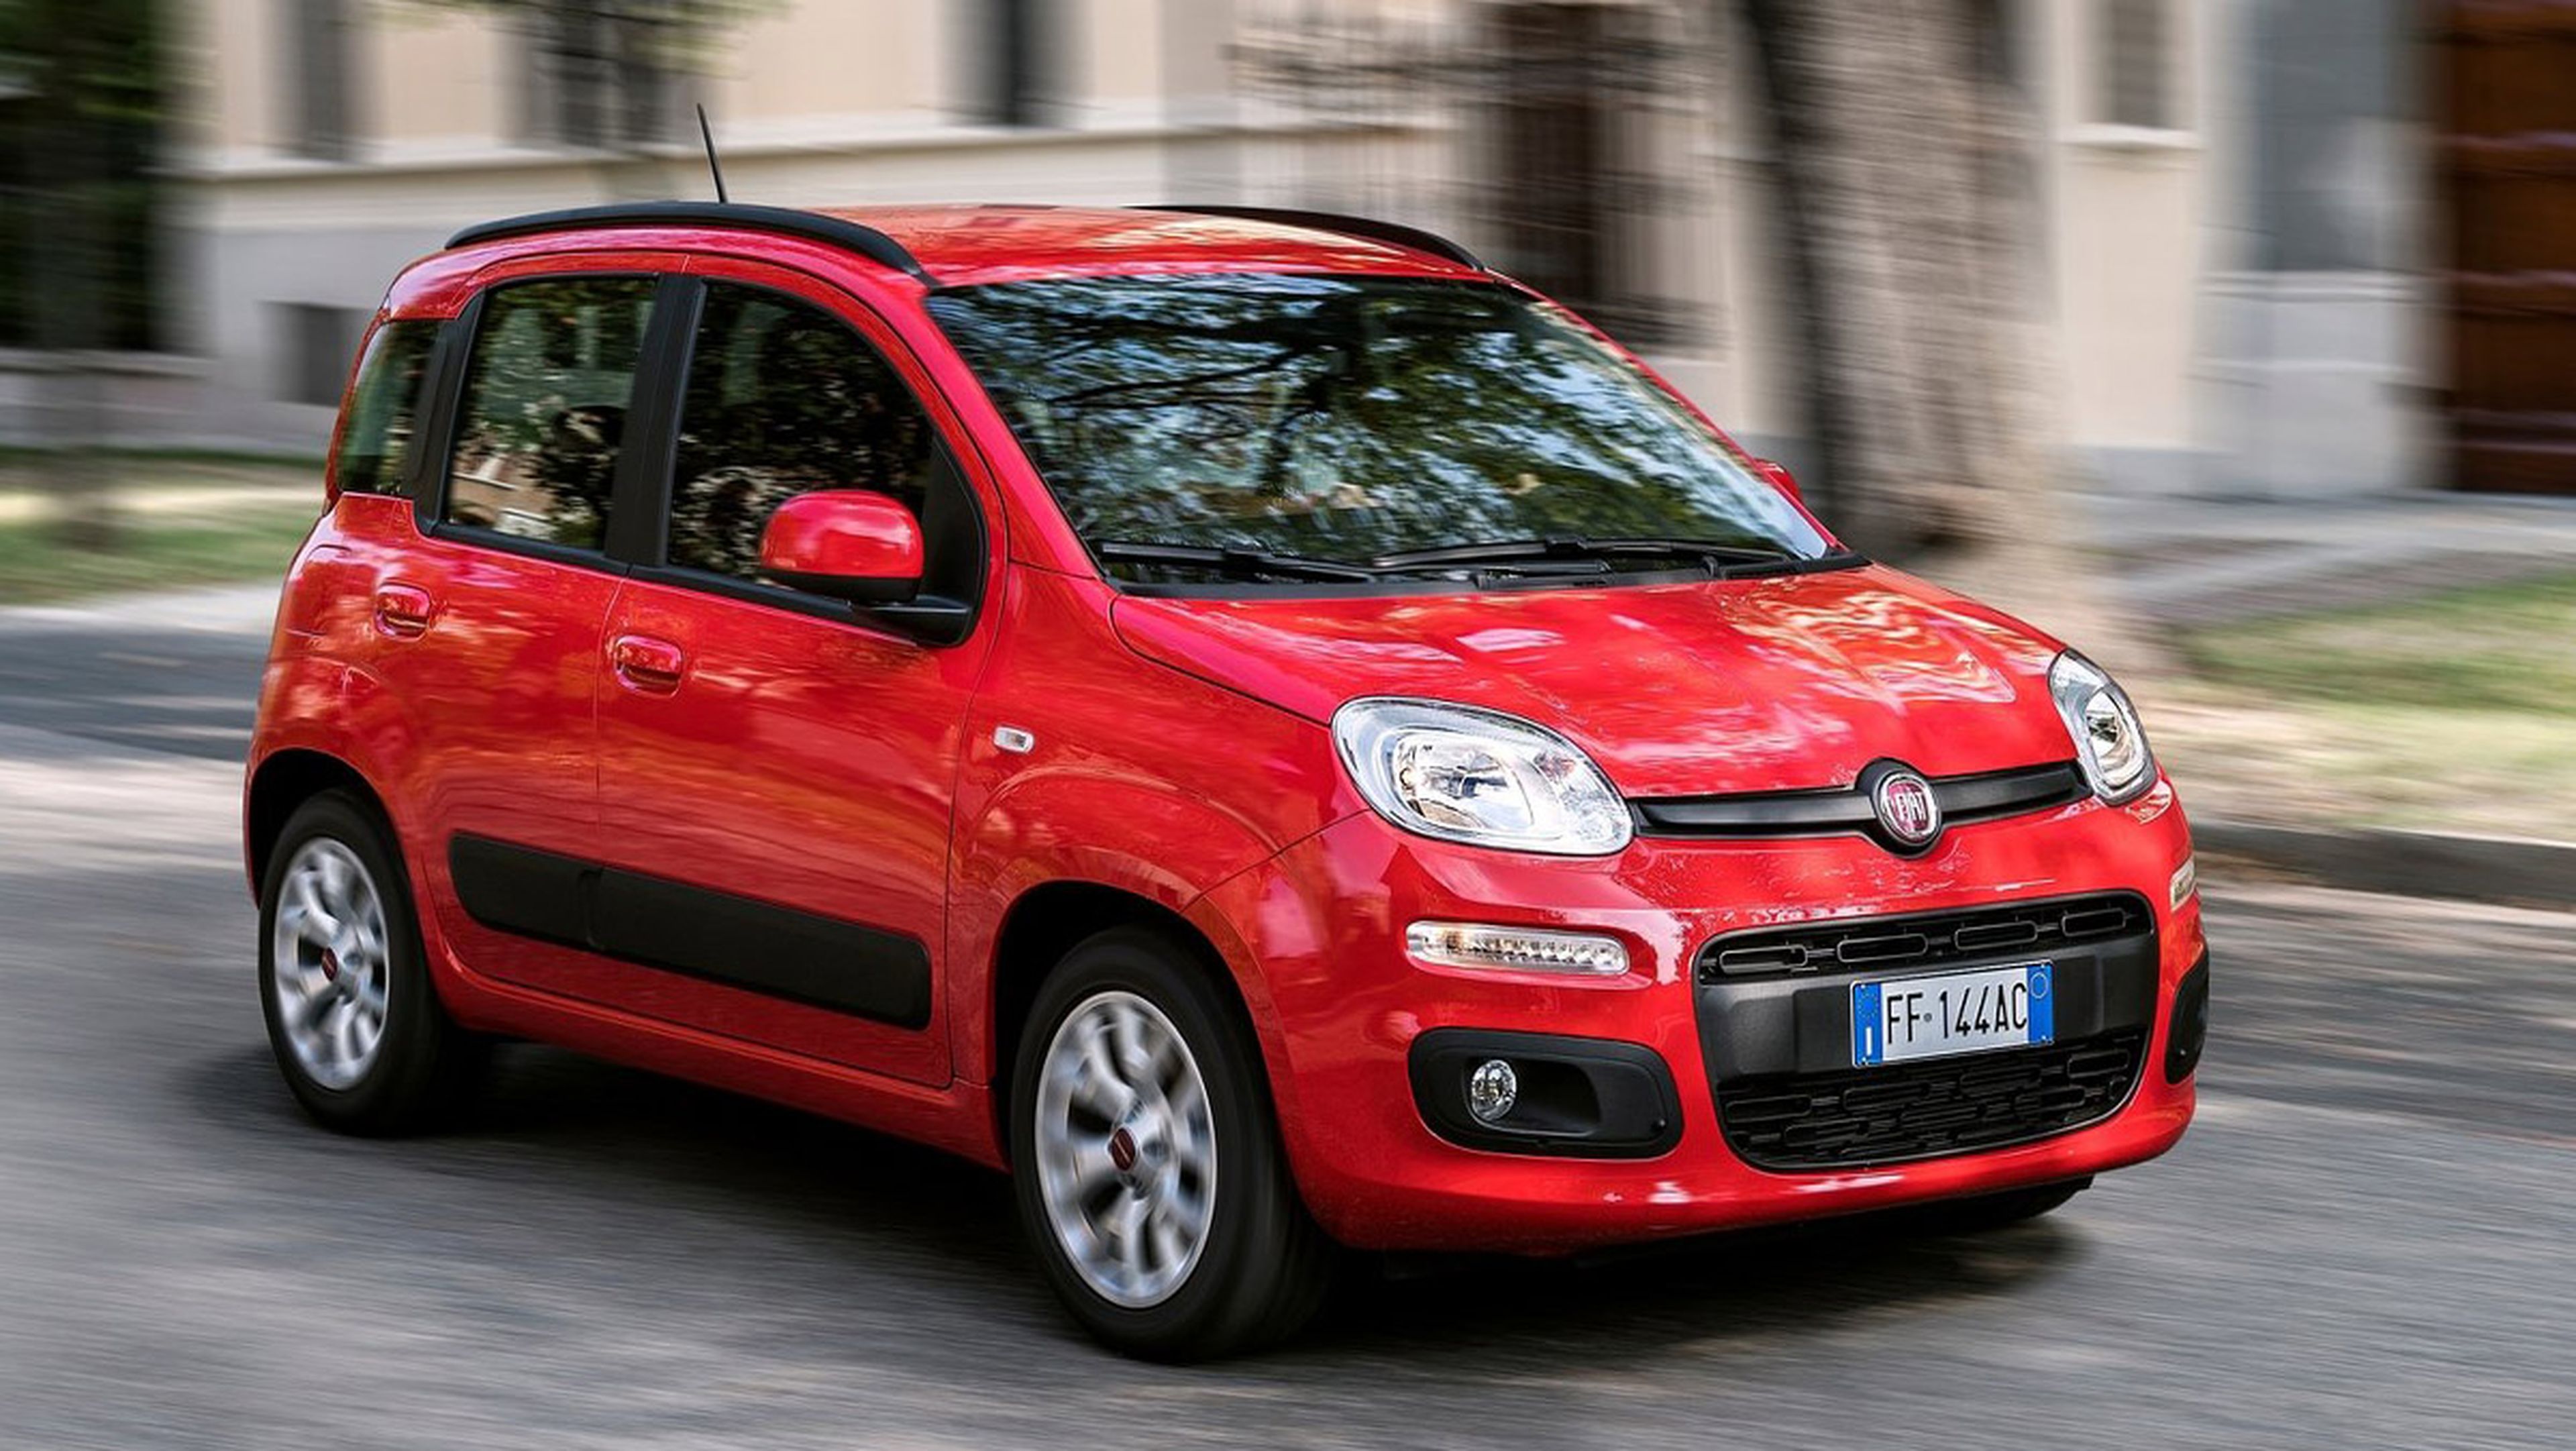 Coches nuevos por menos de 7.000 euros - Fiat Panda